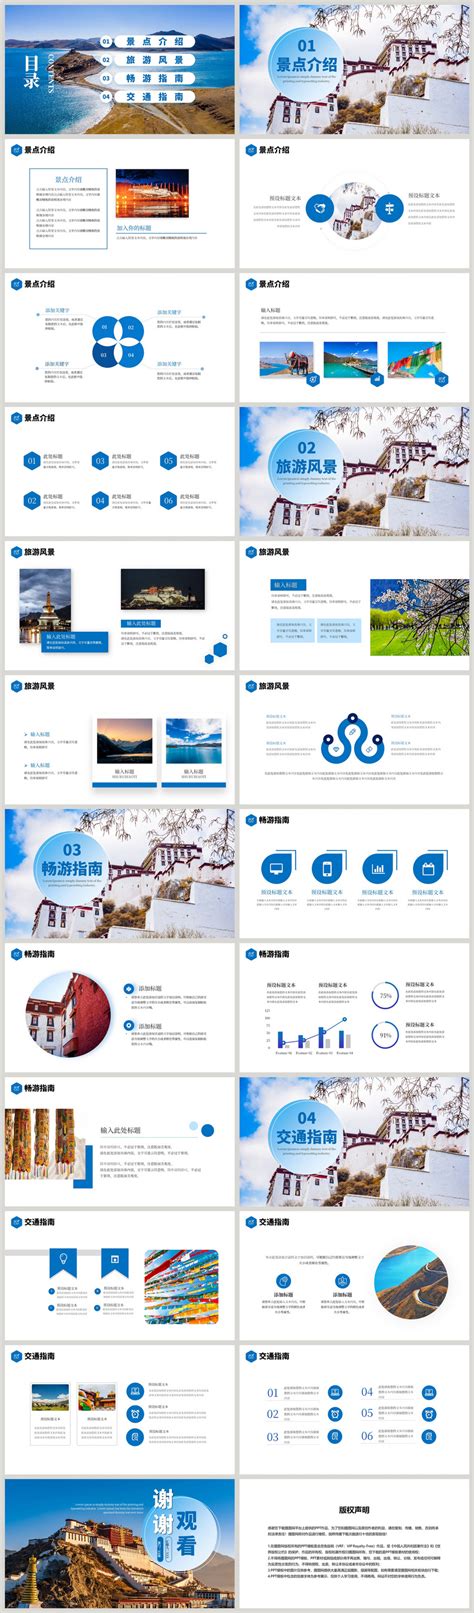 拉萨旅游海报设计-拉萨旅游设计模板下载-觅知网